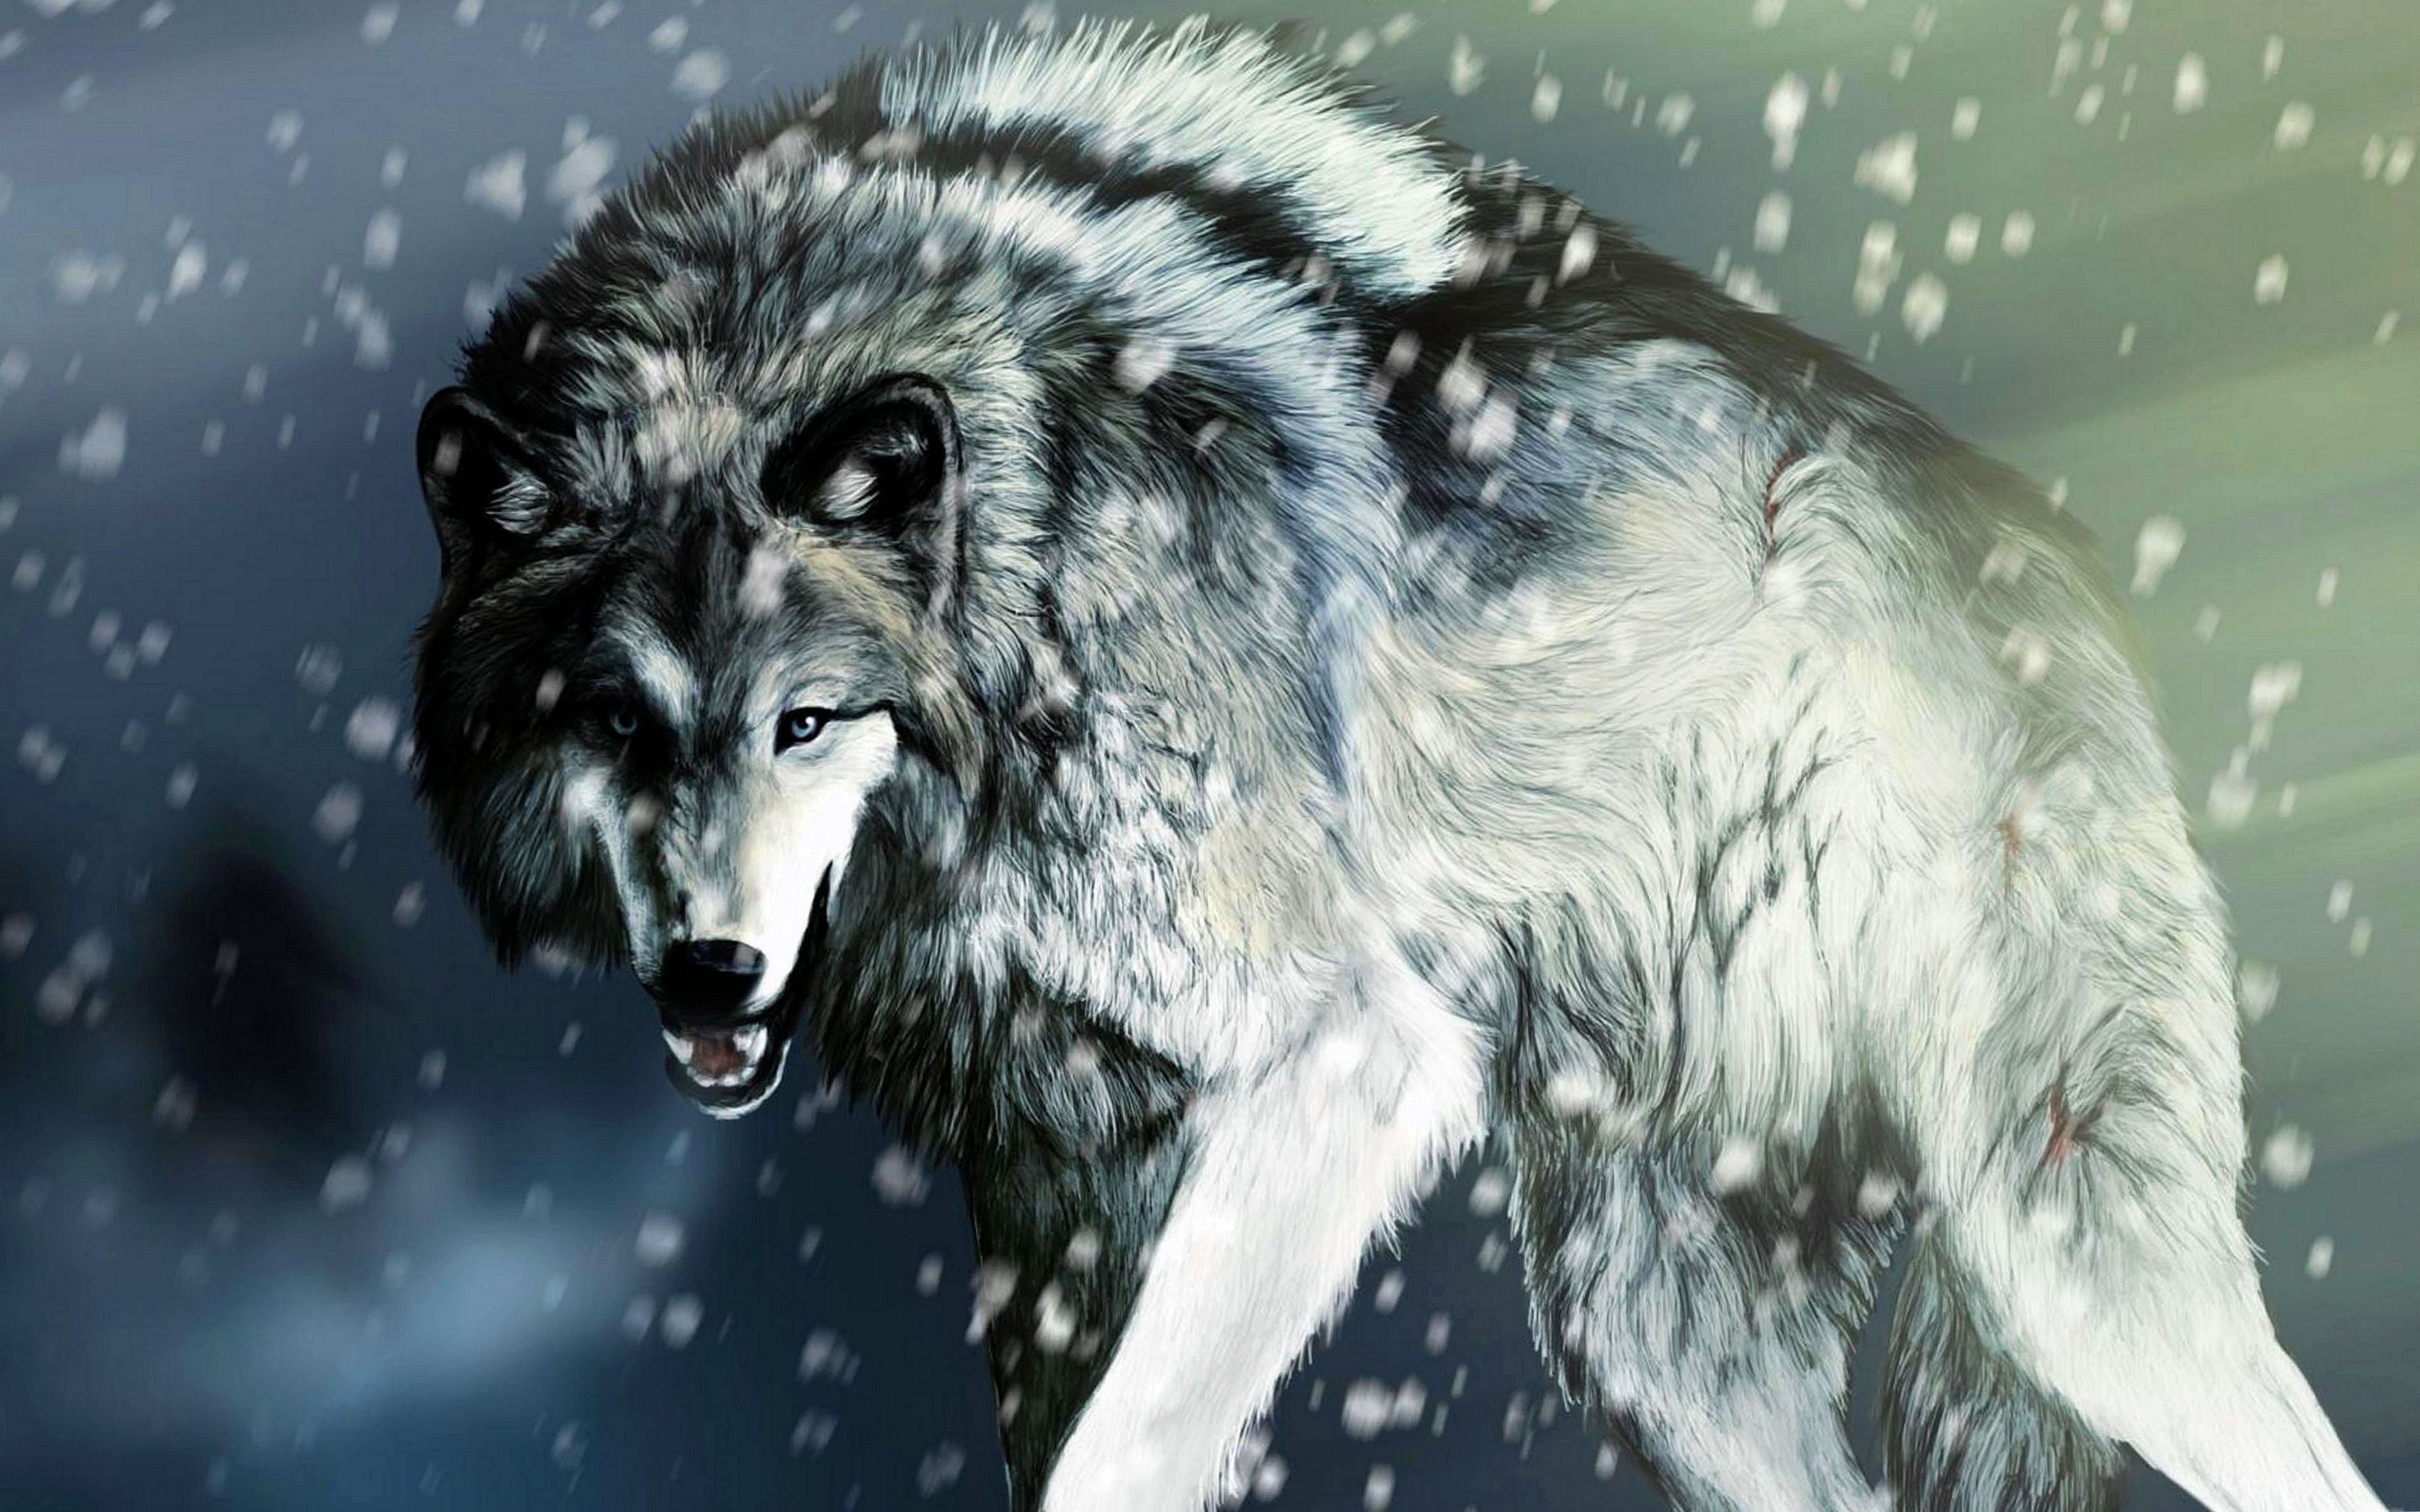 Best snow wolf wallpapers best snow wolf wallpapers snow wolf wolf background wolf wallpaper